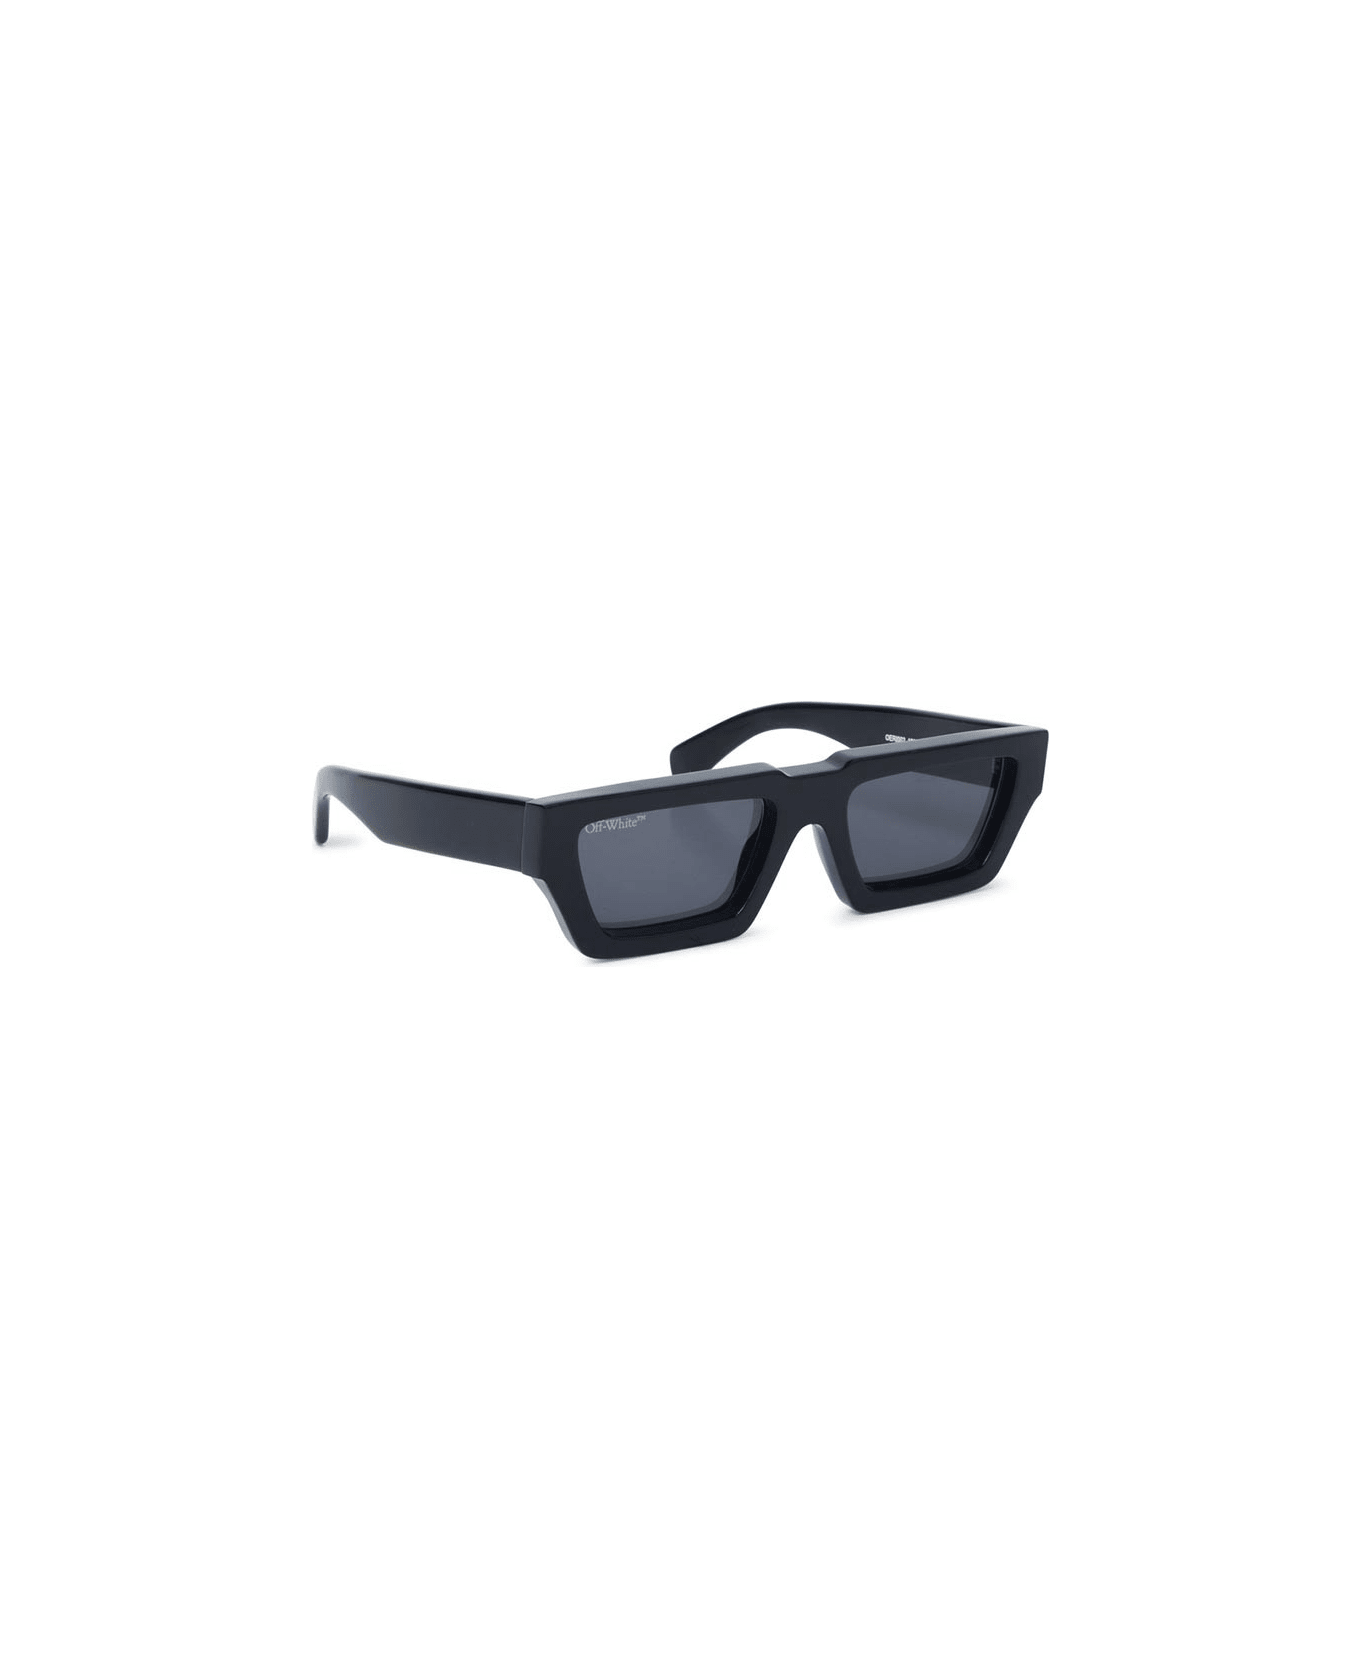 Off-White Manchester Sunglasses - Nero/Grigio